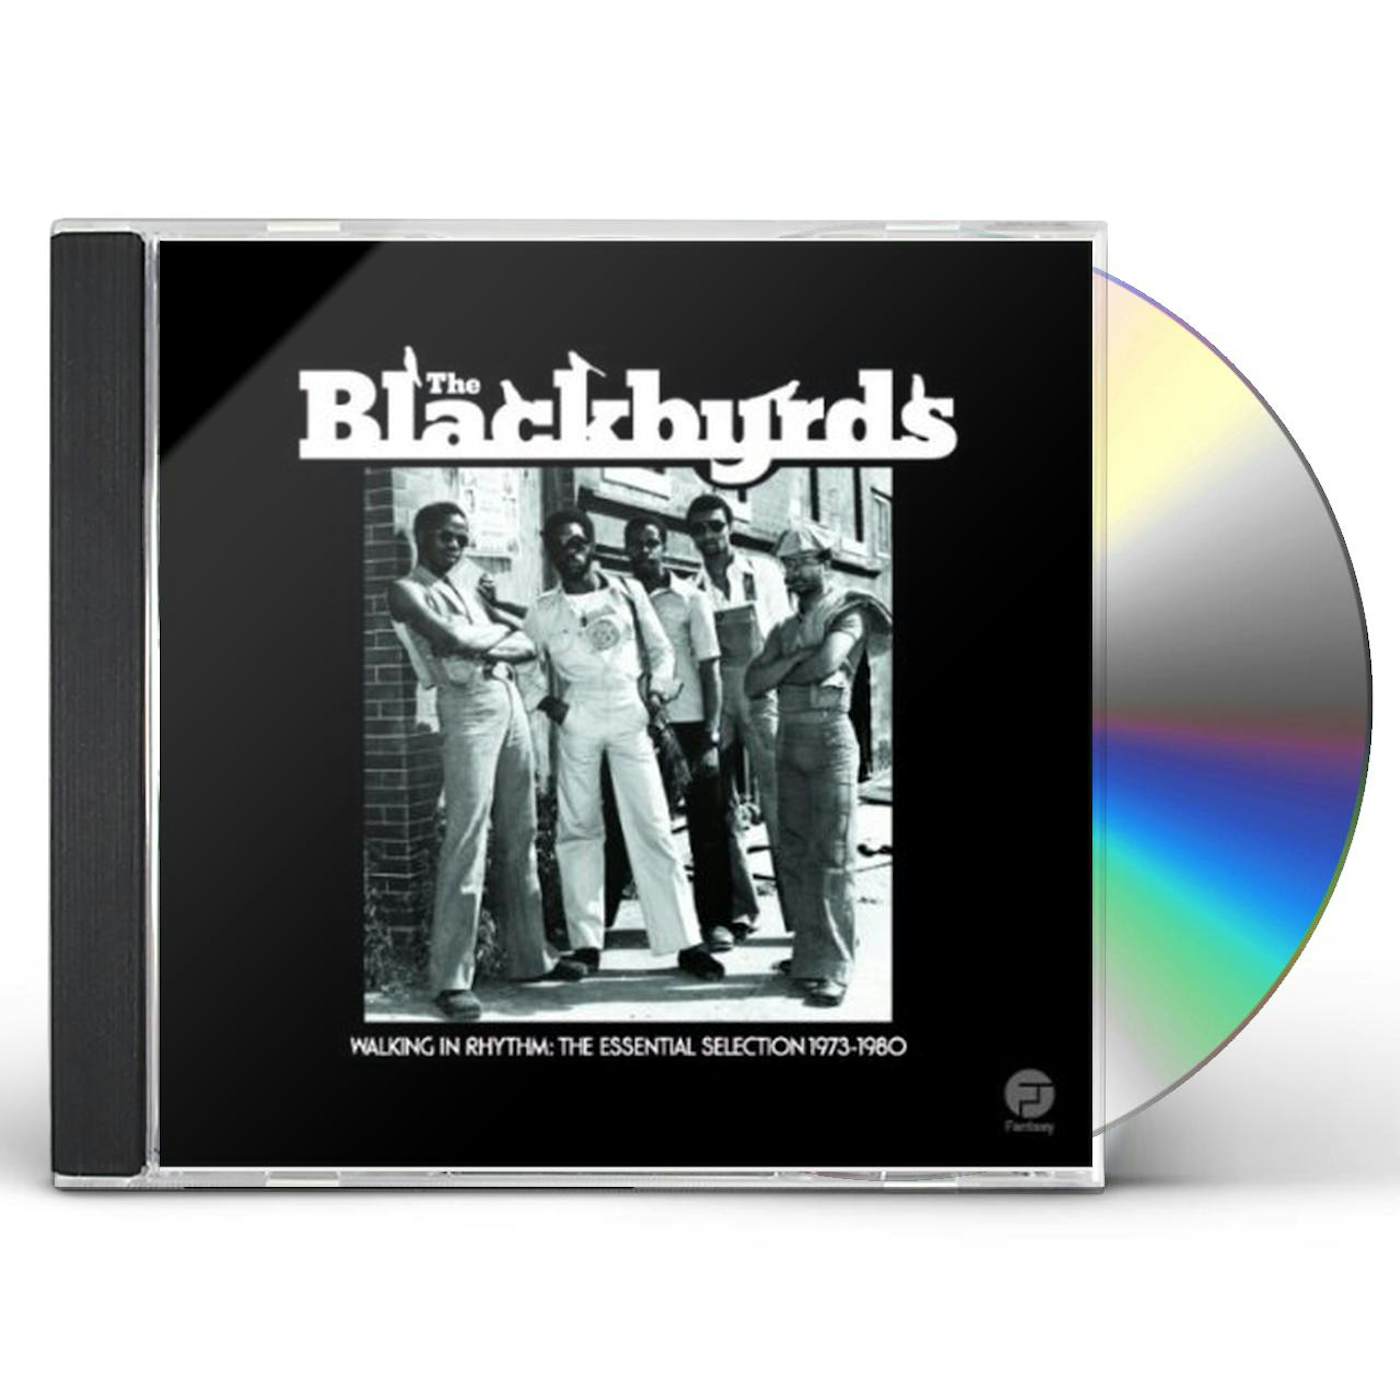 The Blackbyrds WALKING IN RHYTHM: ESSENTIAL SELECTION 1973 -1980 CD